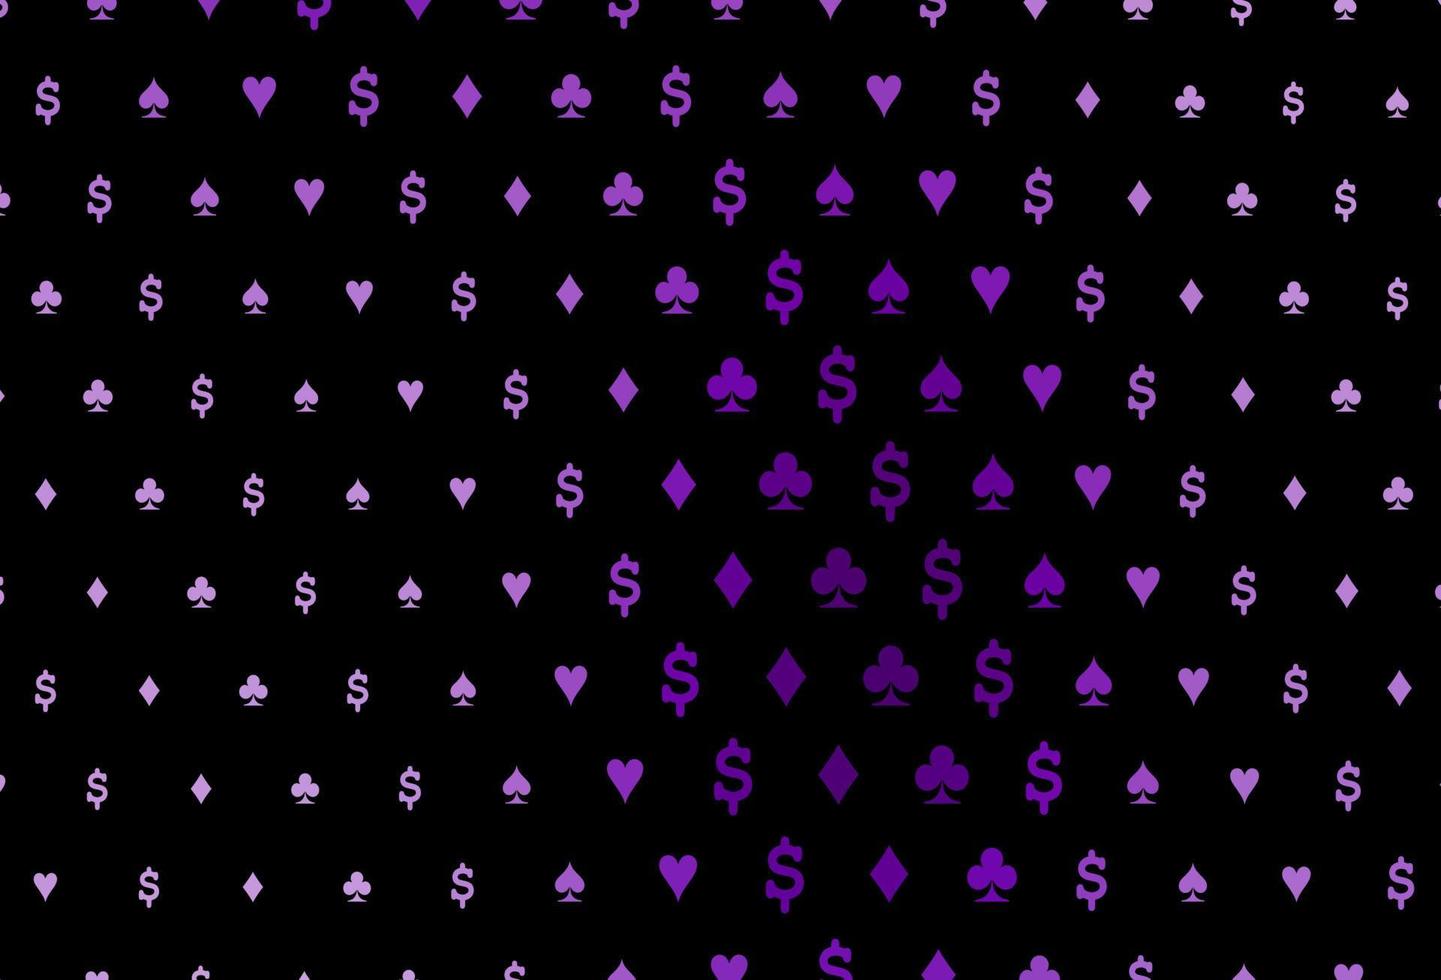 modelo de vetor roxo escuro com símbolos de pôquer.